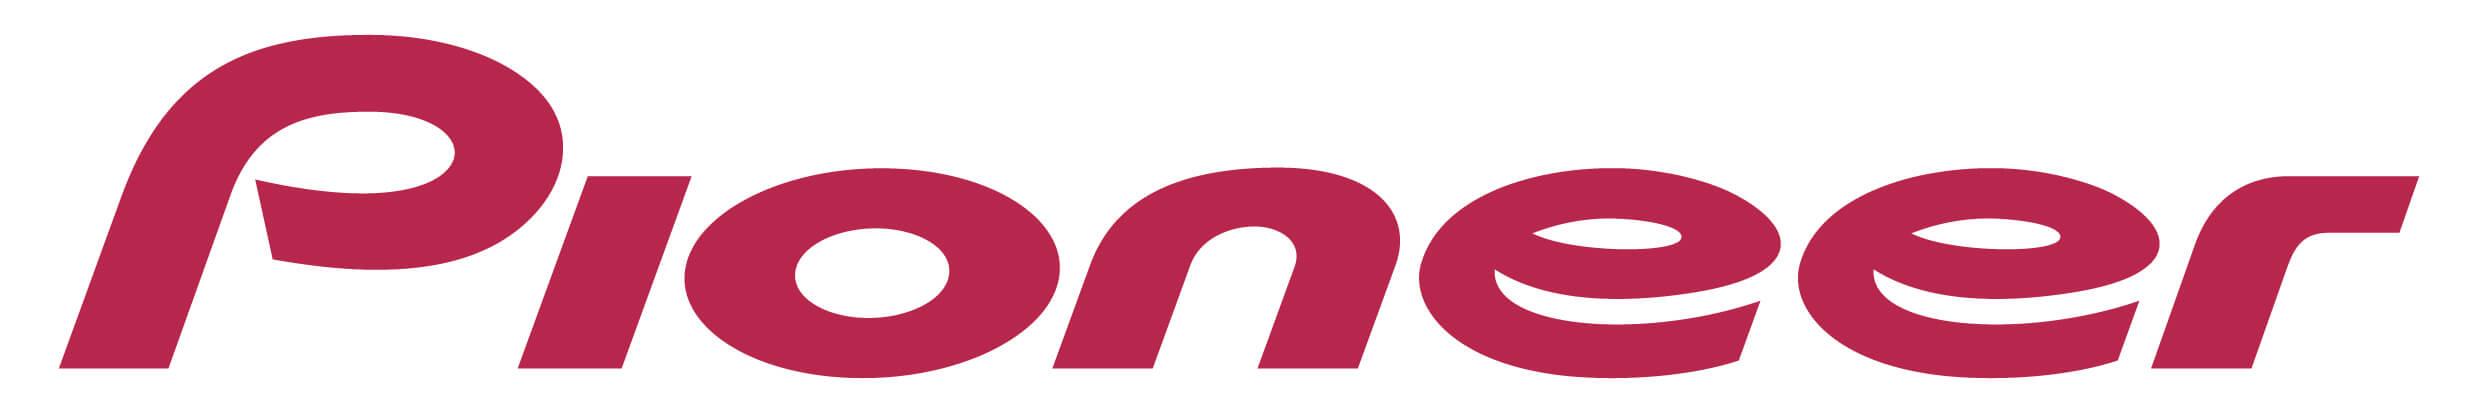 Car Entertainment Logo - Pioneer | Pioneer Car Audio, Video, Amplifiers, Speakers, Sub ...